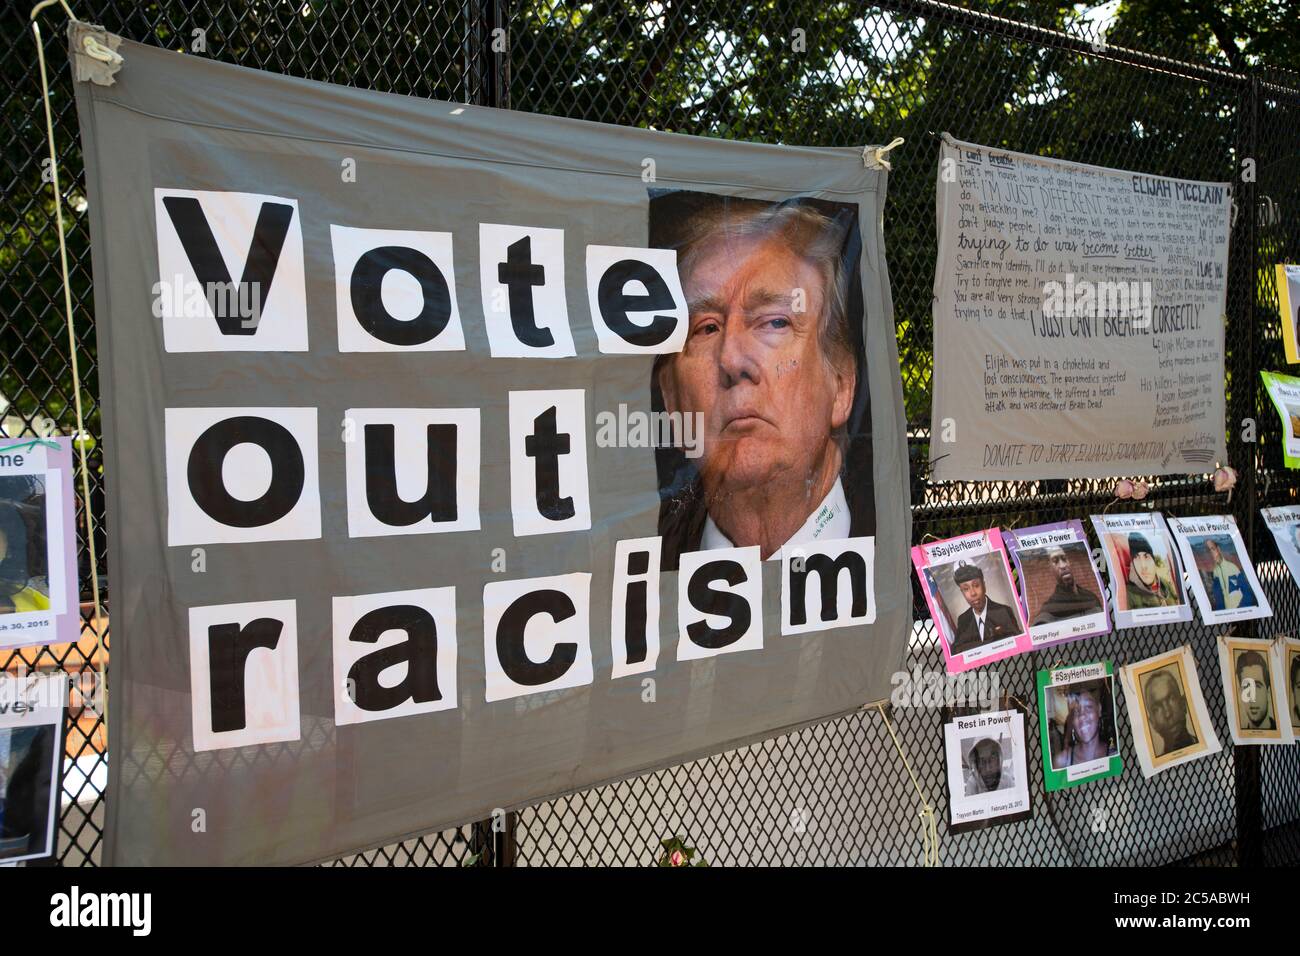 USA Washington DC signe de protestation contre le racisme attaché à une clôture temporaire autour de Lafayette Square Banque D'Images